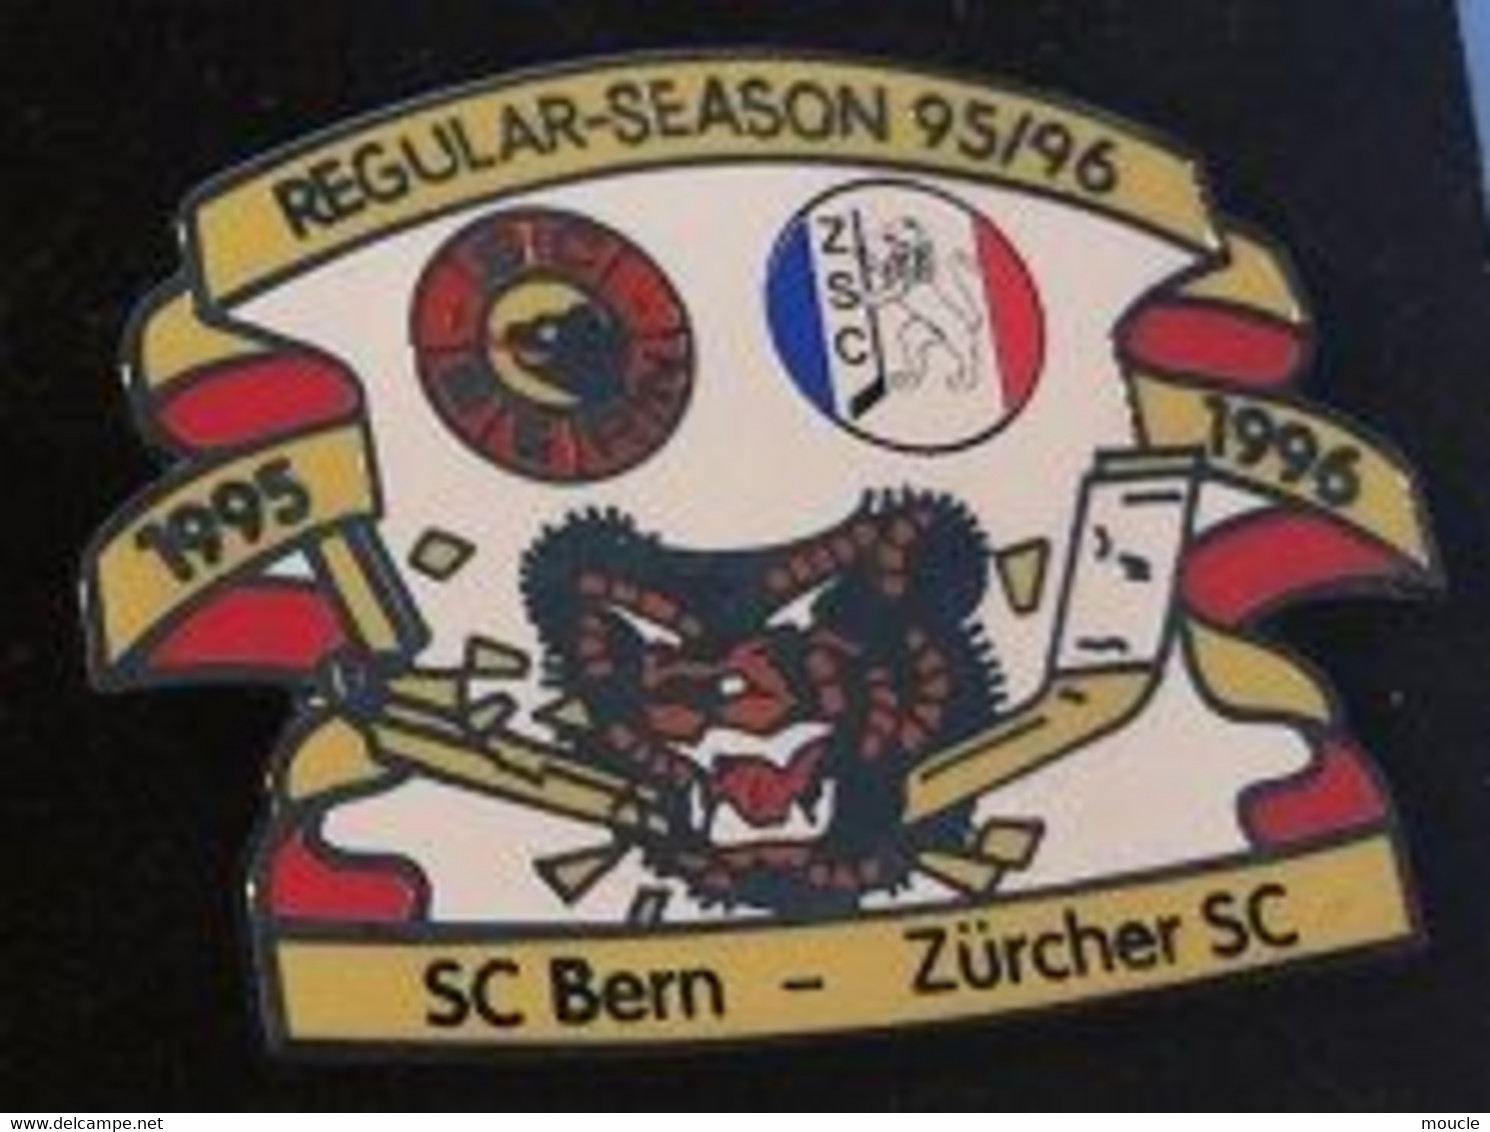 HOCKEY SUR GLACE - SUISSE - SCHWEIZ - SWITZERLAND - REGULAR SAISON 95/96 - SC BERN / ZÜRCHER SC - ICE - EGF -  (29) - Winter Sports